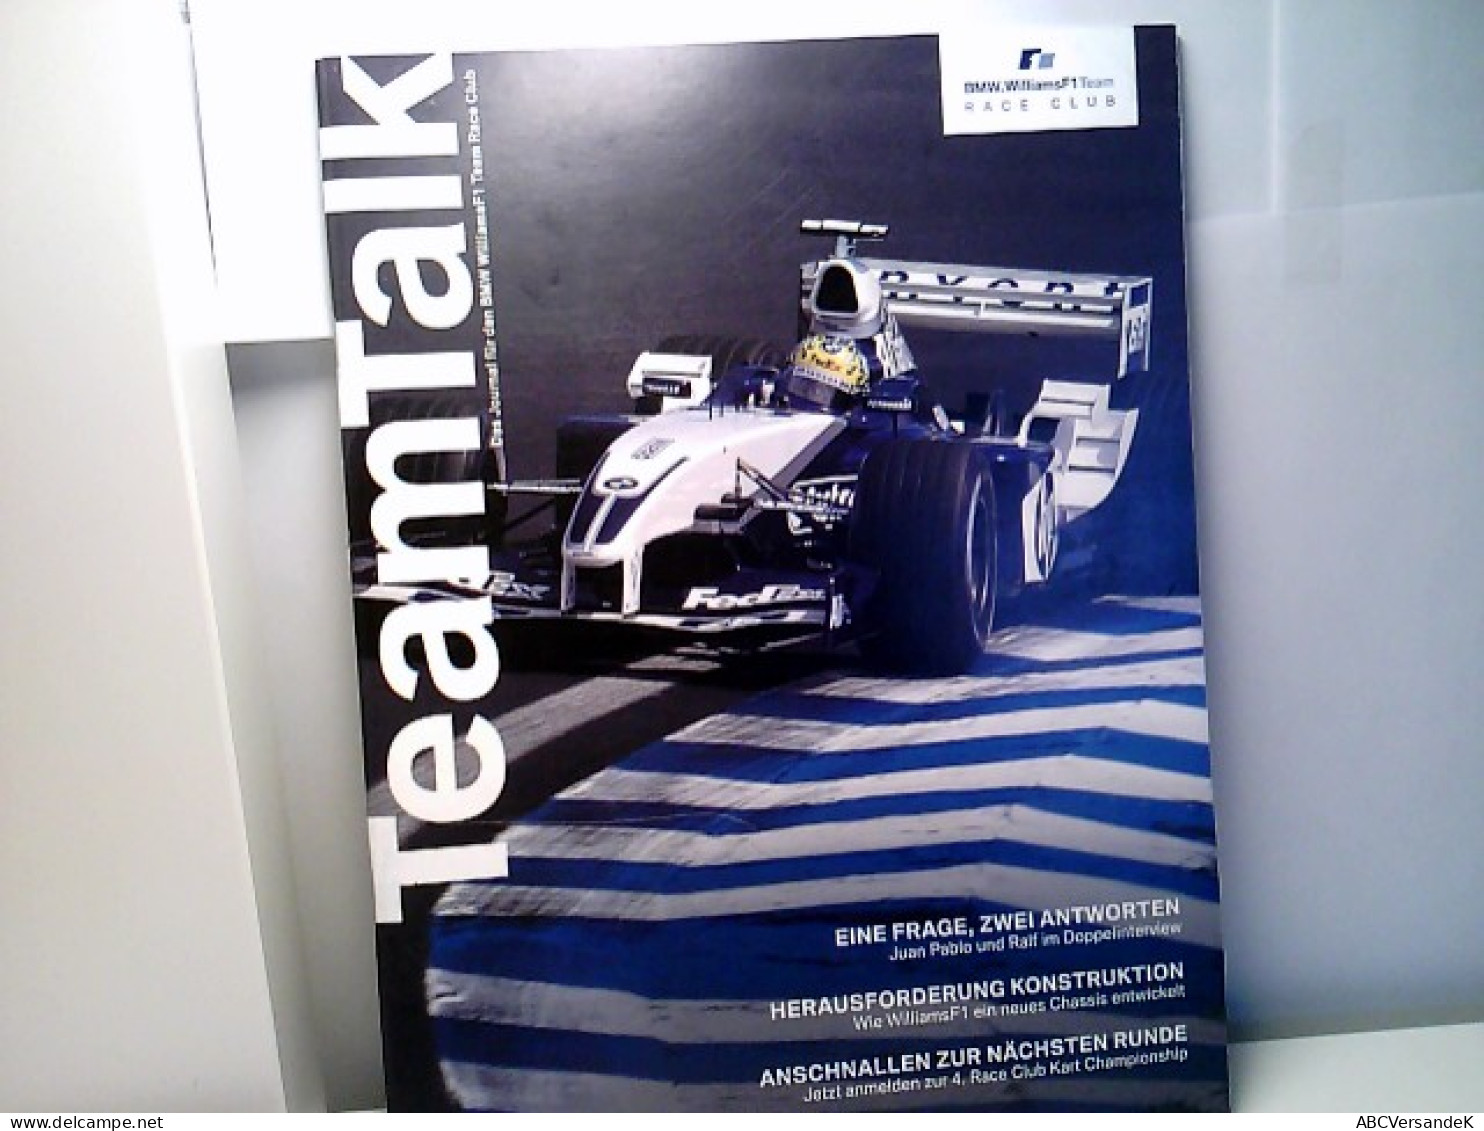 Team Talk Das Journal Für Den BMW WilliamsF1 Team Race Club. - Sport